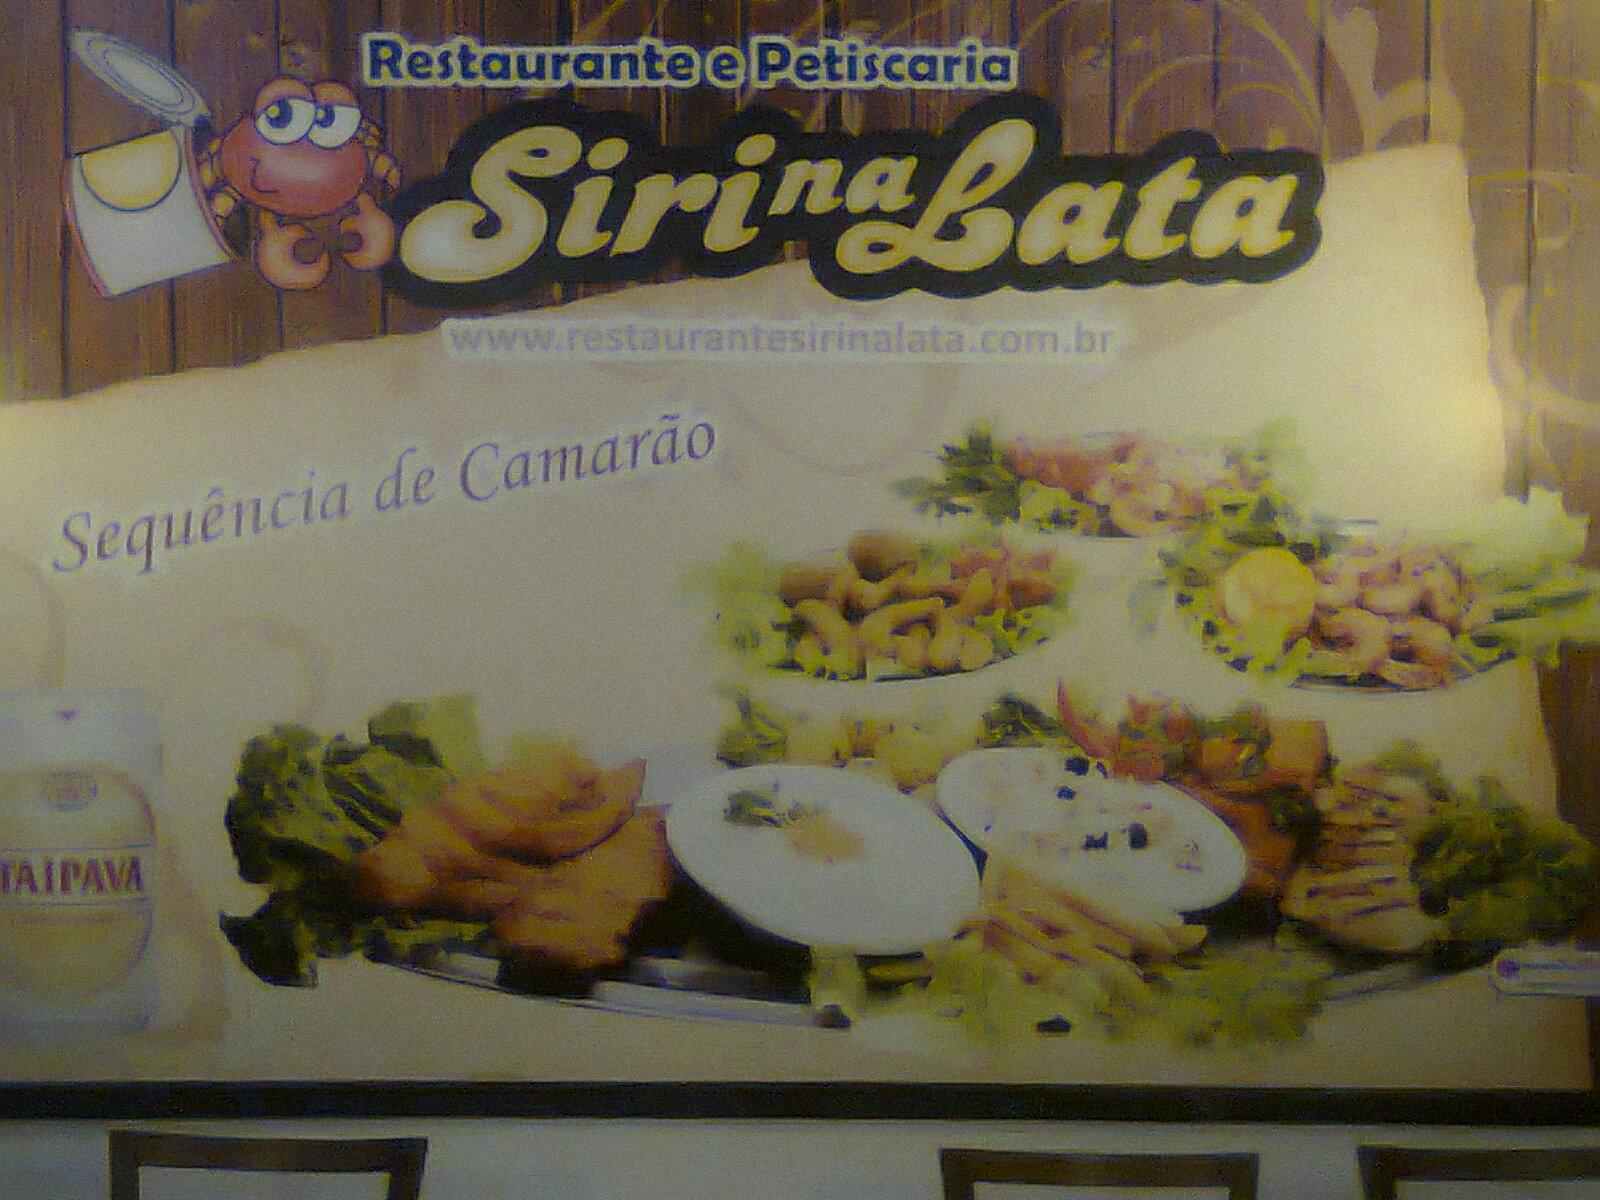 Restaurante Siri na Lata logo